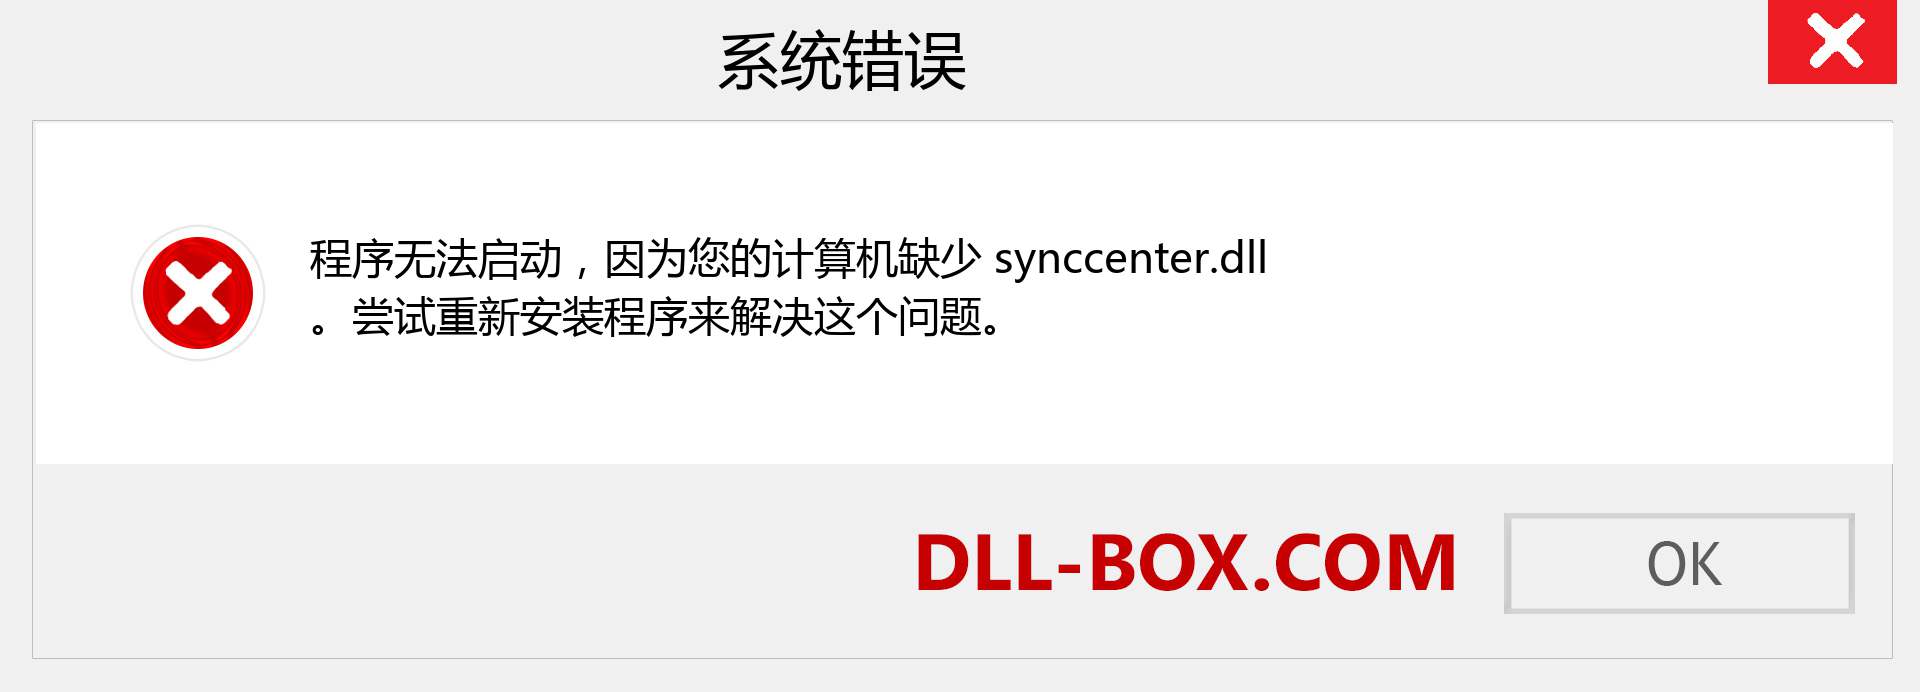 synccenter.dll 文件丢失？。 适用于 Windows 7、8、10 的下载 - 修复 Windows、照片、图像上的 synccenter dll 丢失错误